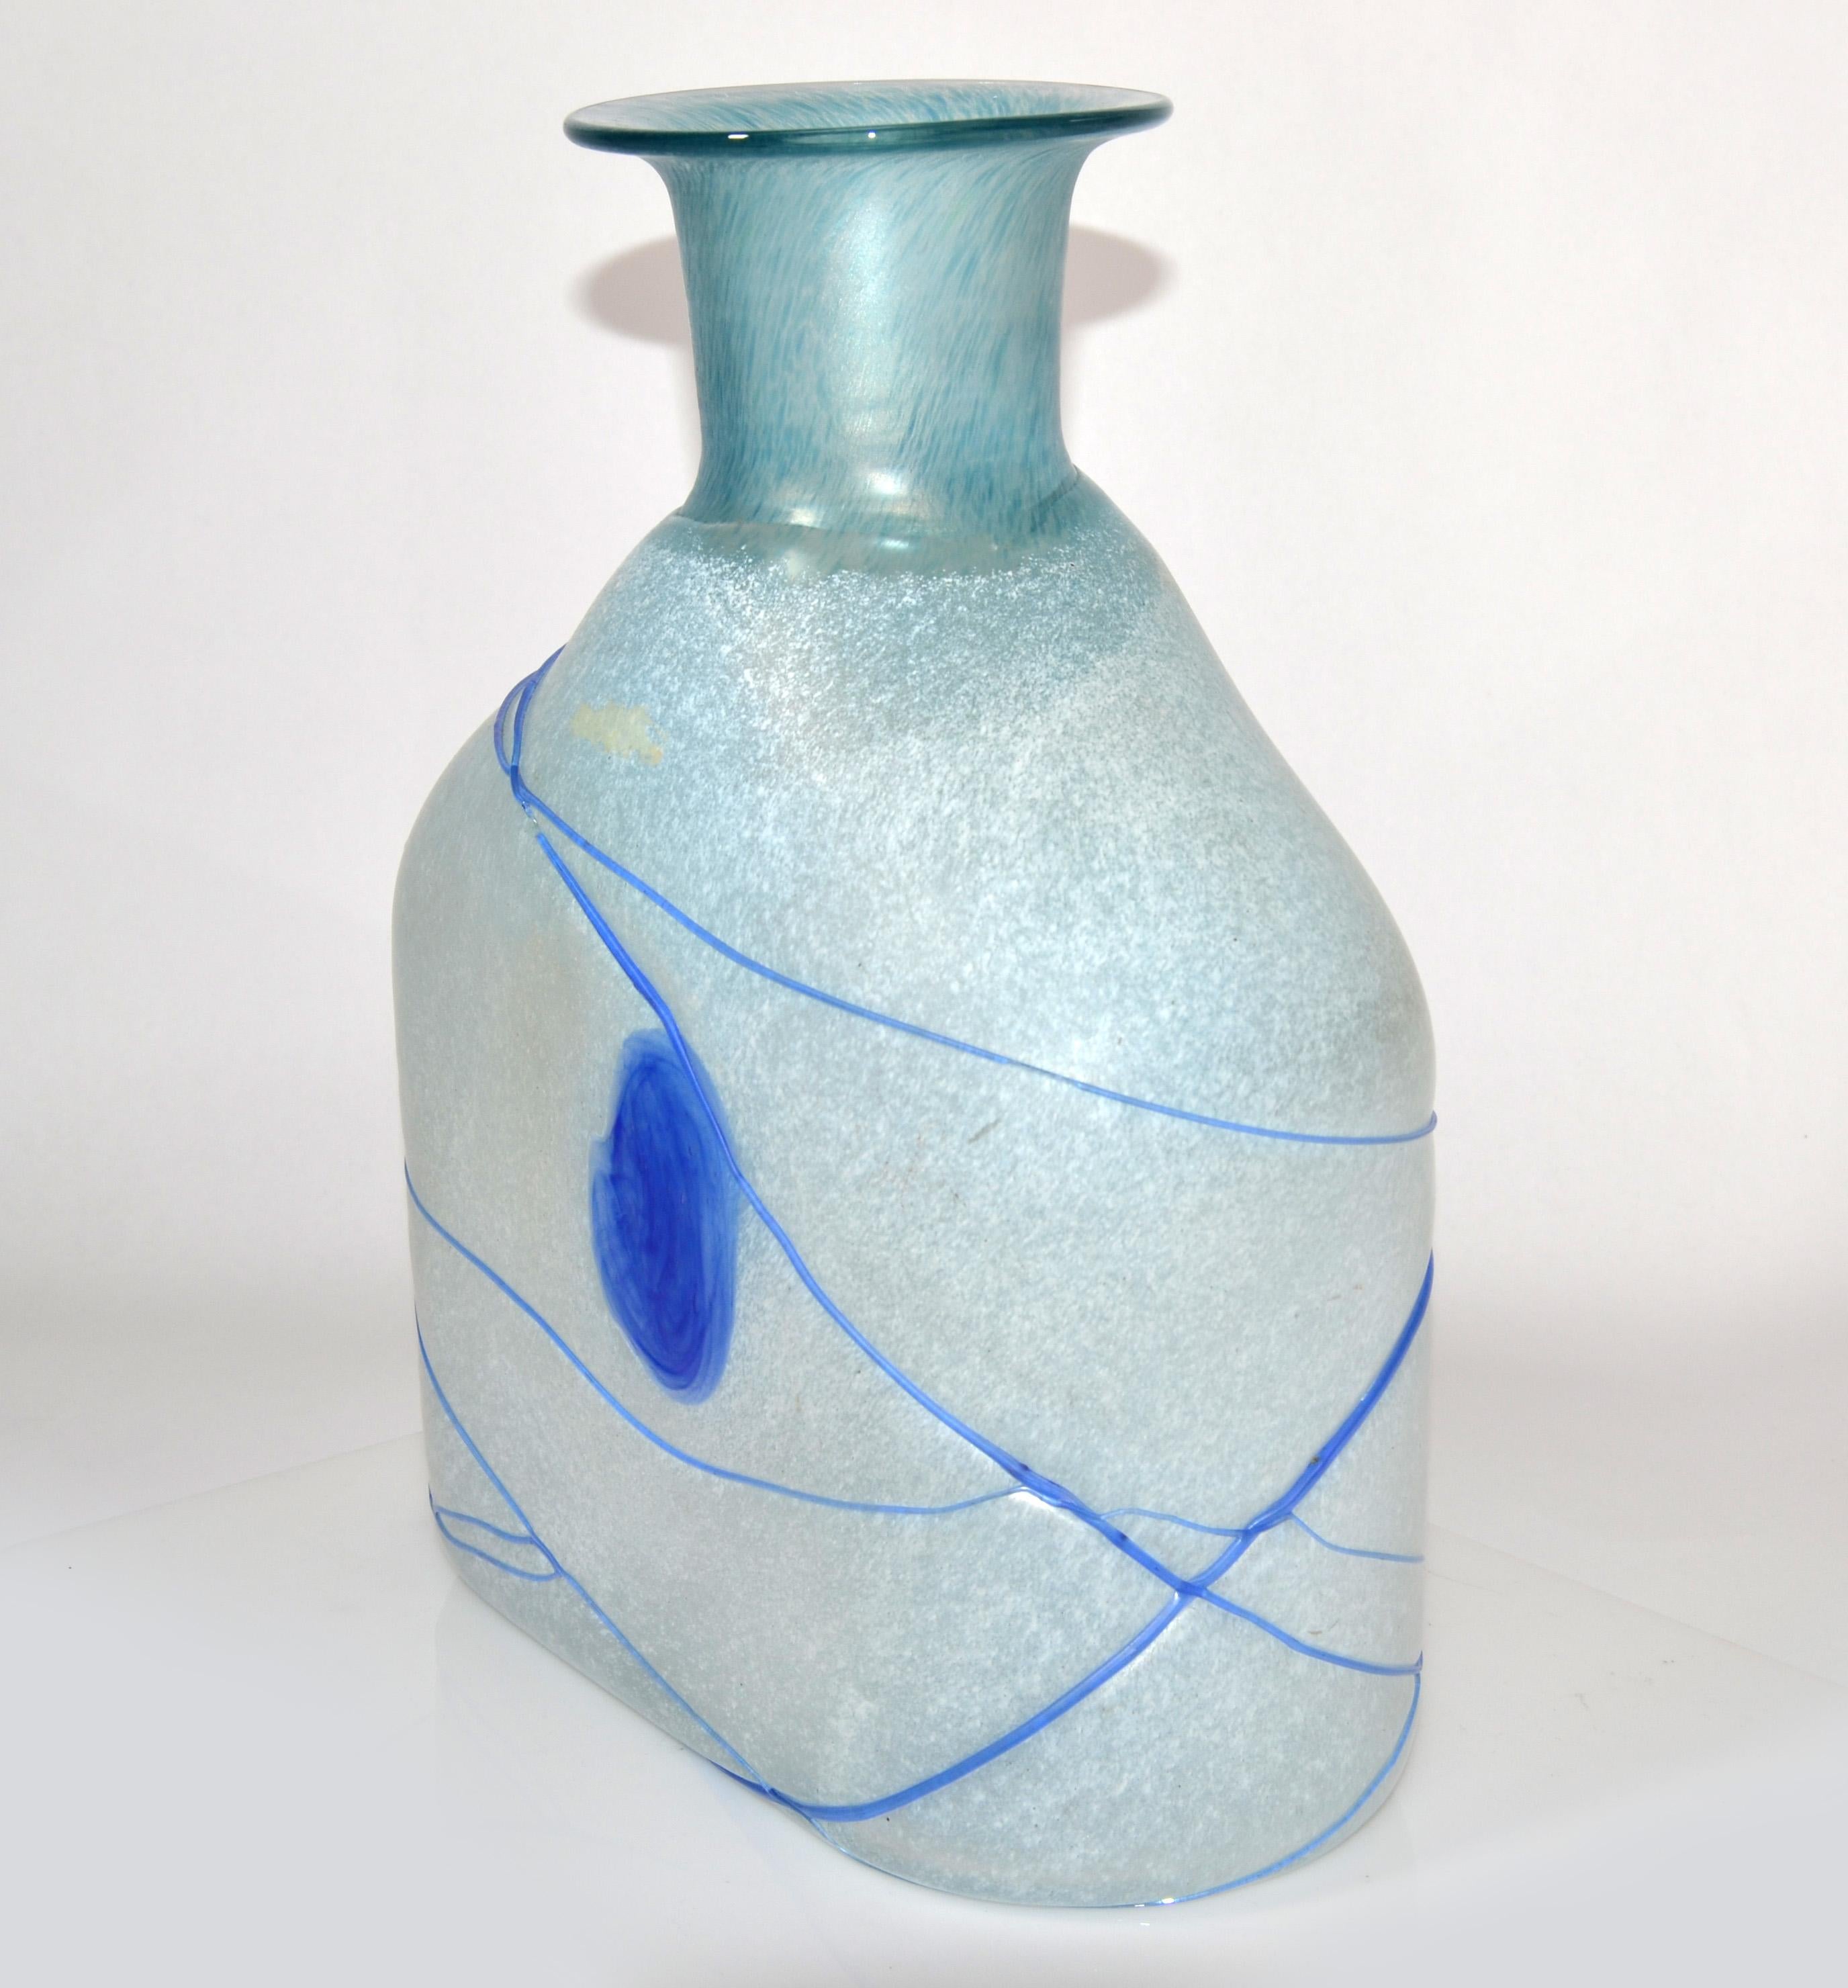 Kosta Boda Bertil Vallien Blue Galaxy Art Glass Vase Decanter Scandinavian 1950  For Sale 2